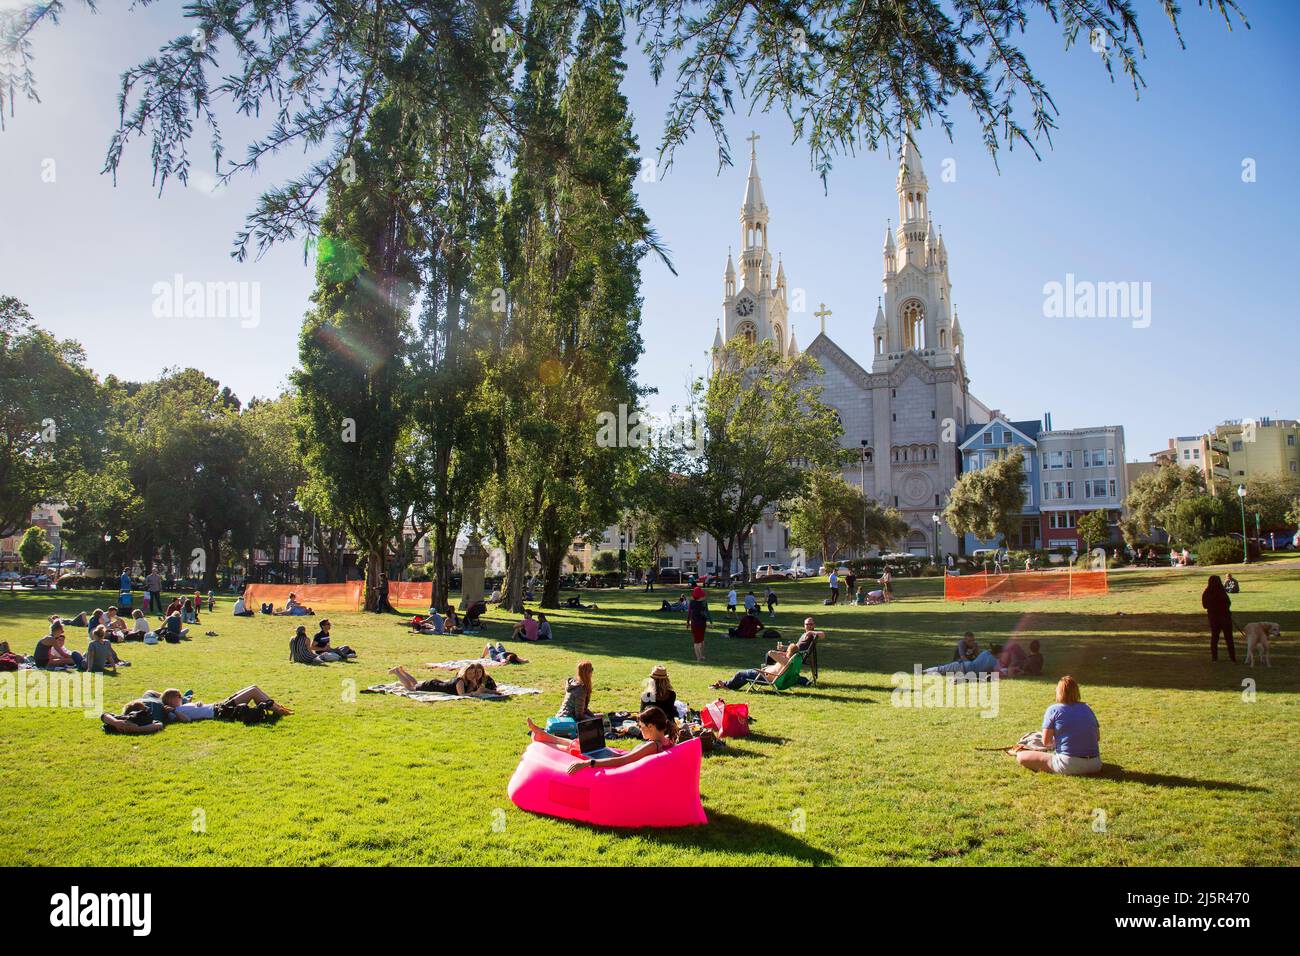 Etats-Unis, Washington Square Park à San Francisco des personnes se posant sur la pelouse avec l'église Saints Pierre et Paul en arrière-plan et une femme sur une wor fatboy Banque D'Images